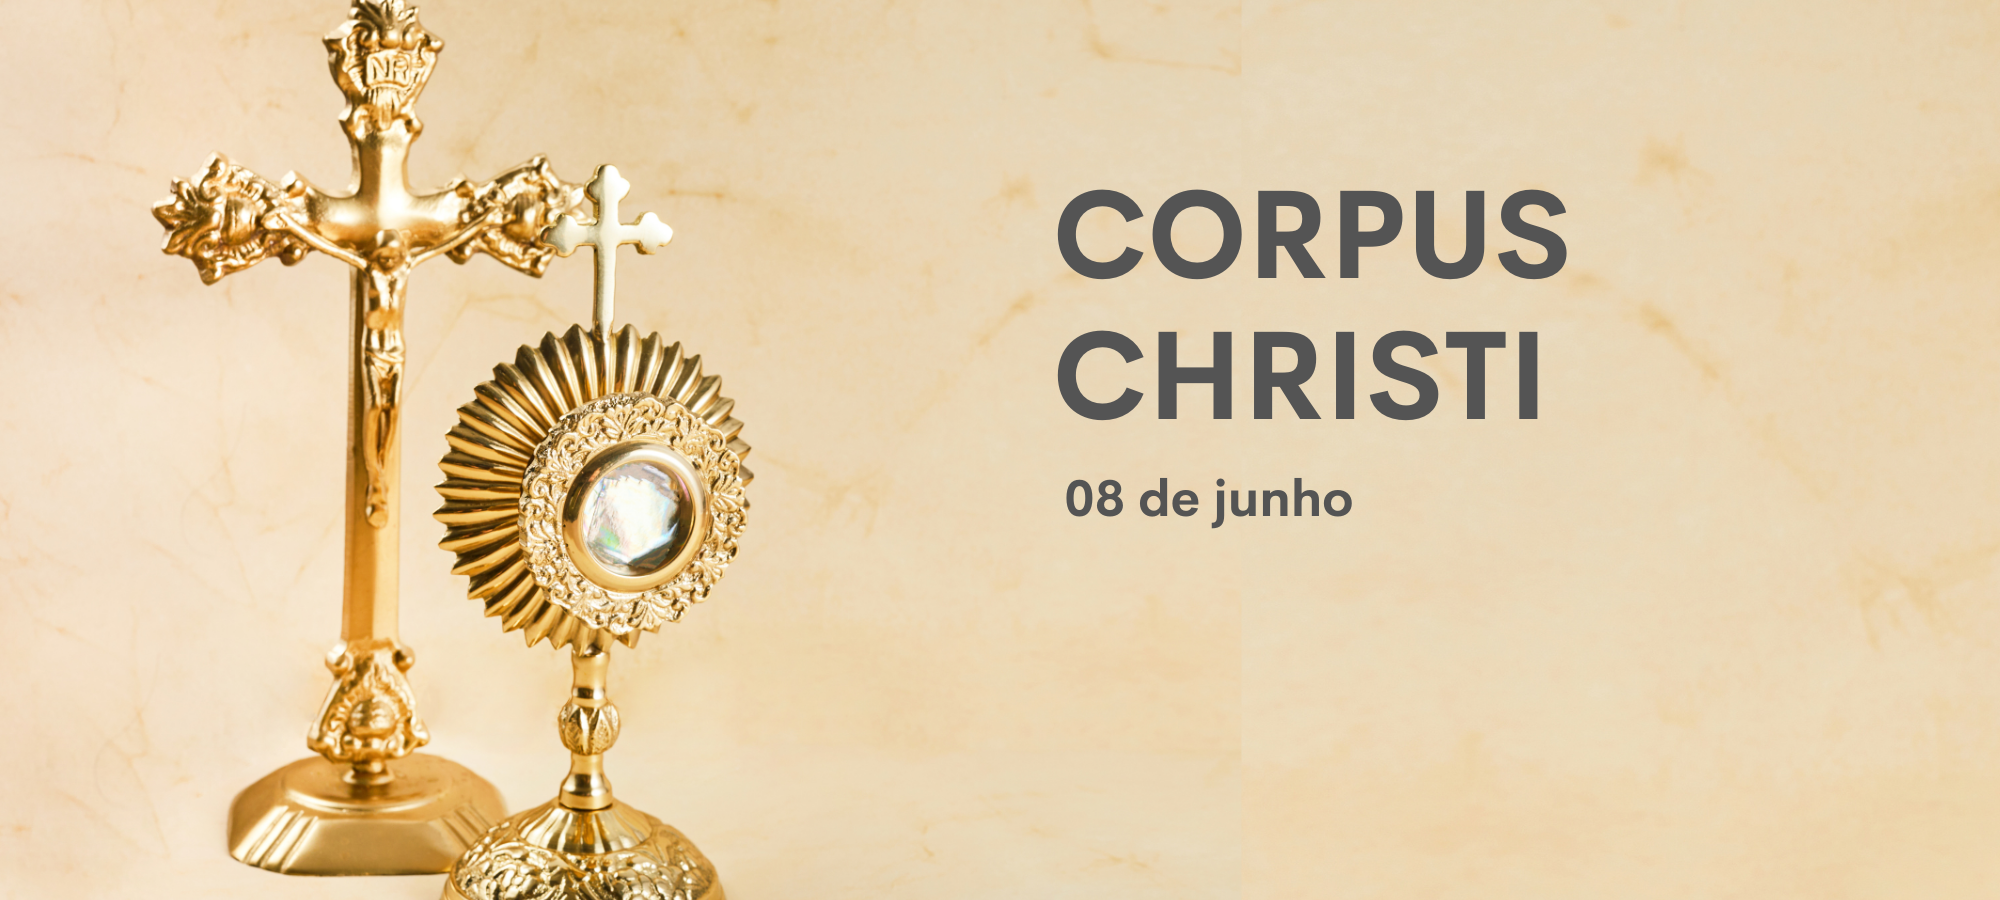  Pidetäänkö Corpus Christi -päivää yleisenä juhlapäivänä Brasiliassa vai ei?